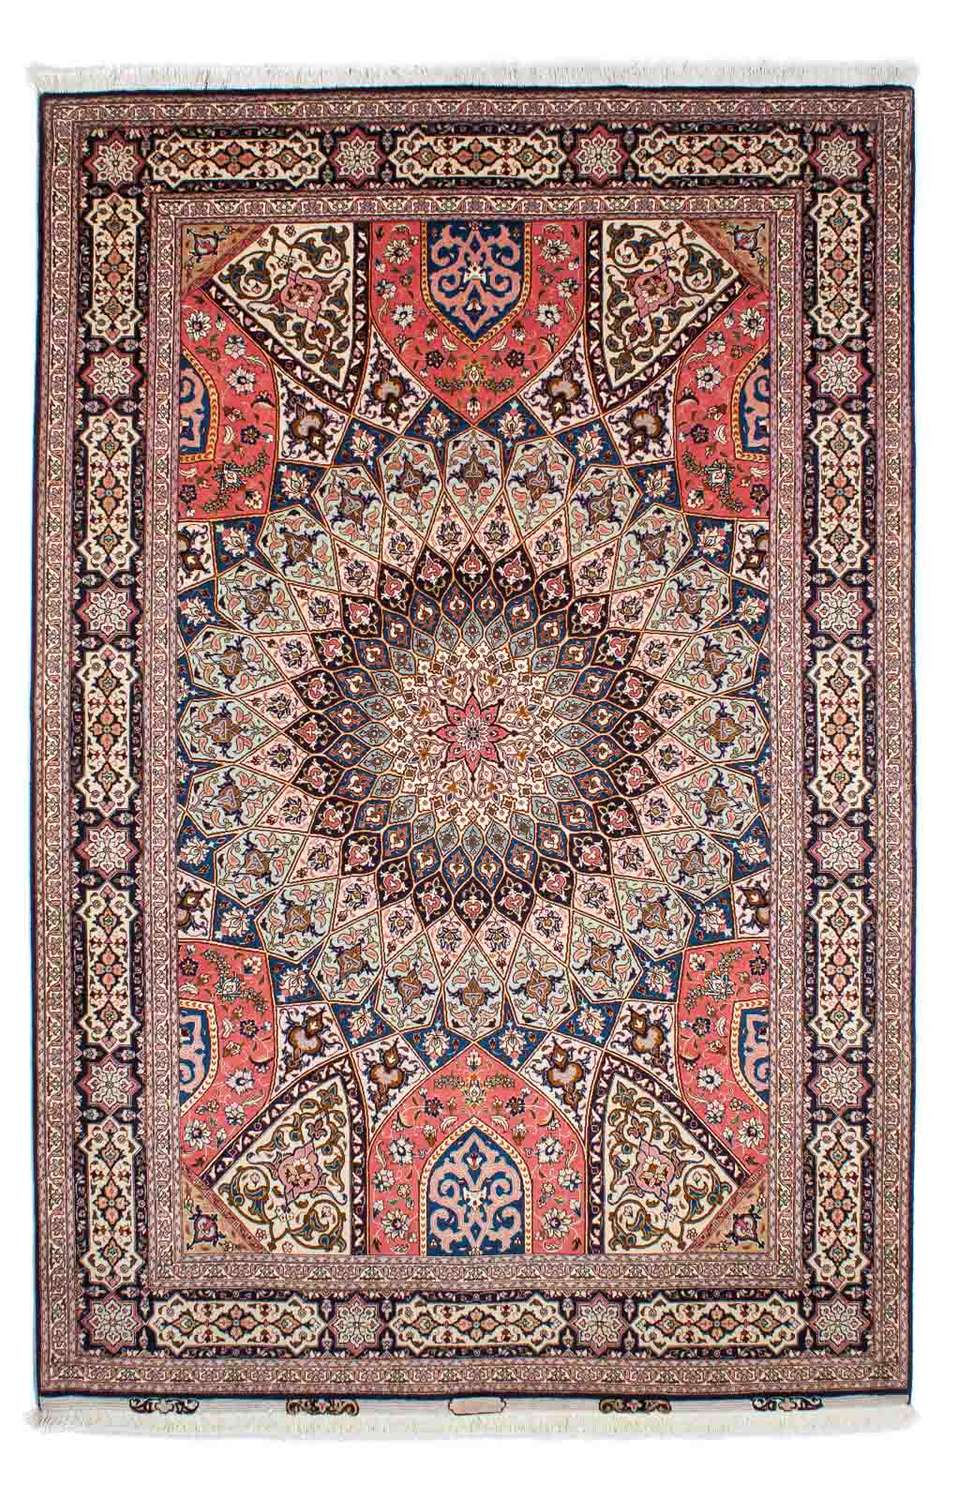 Dywan perski - Tabriz - Królewski - 263 x 174 cm - wielokolorowy